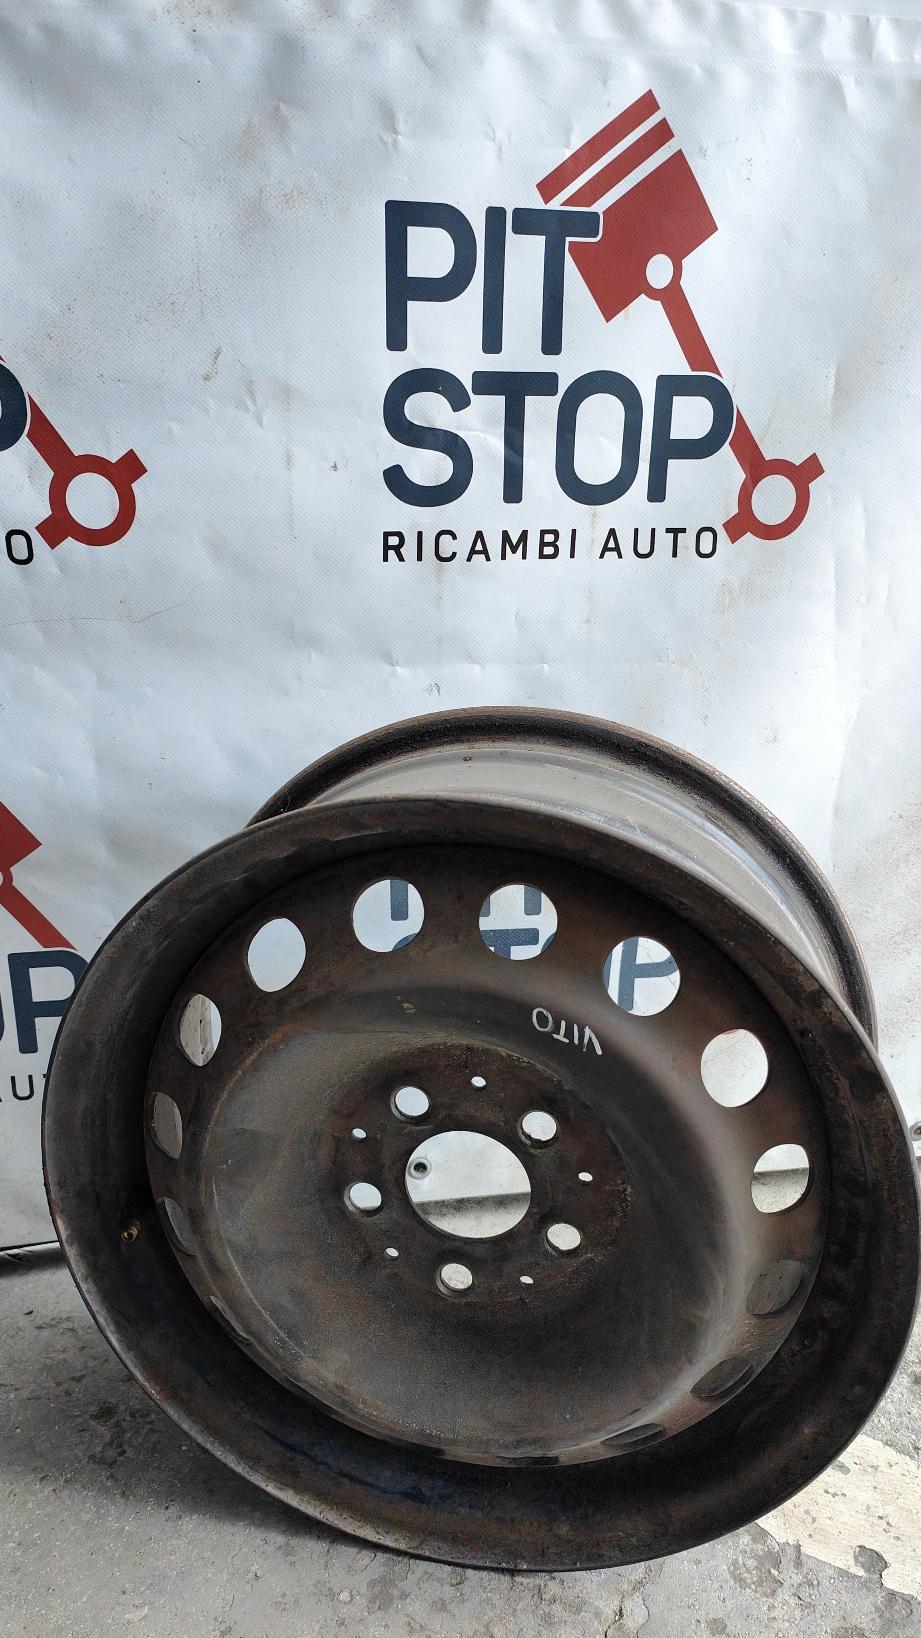 cerchio in ferro - Mercedes Vito W639 2è Serie - Pit Stop Ricambi Auto